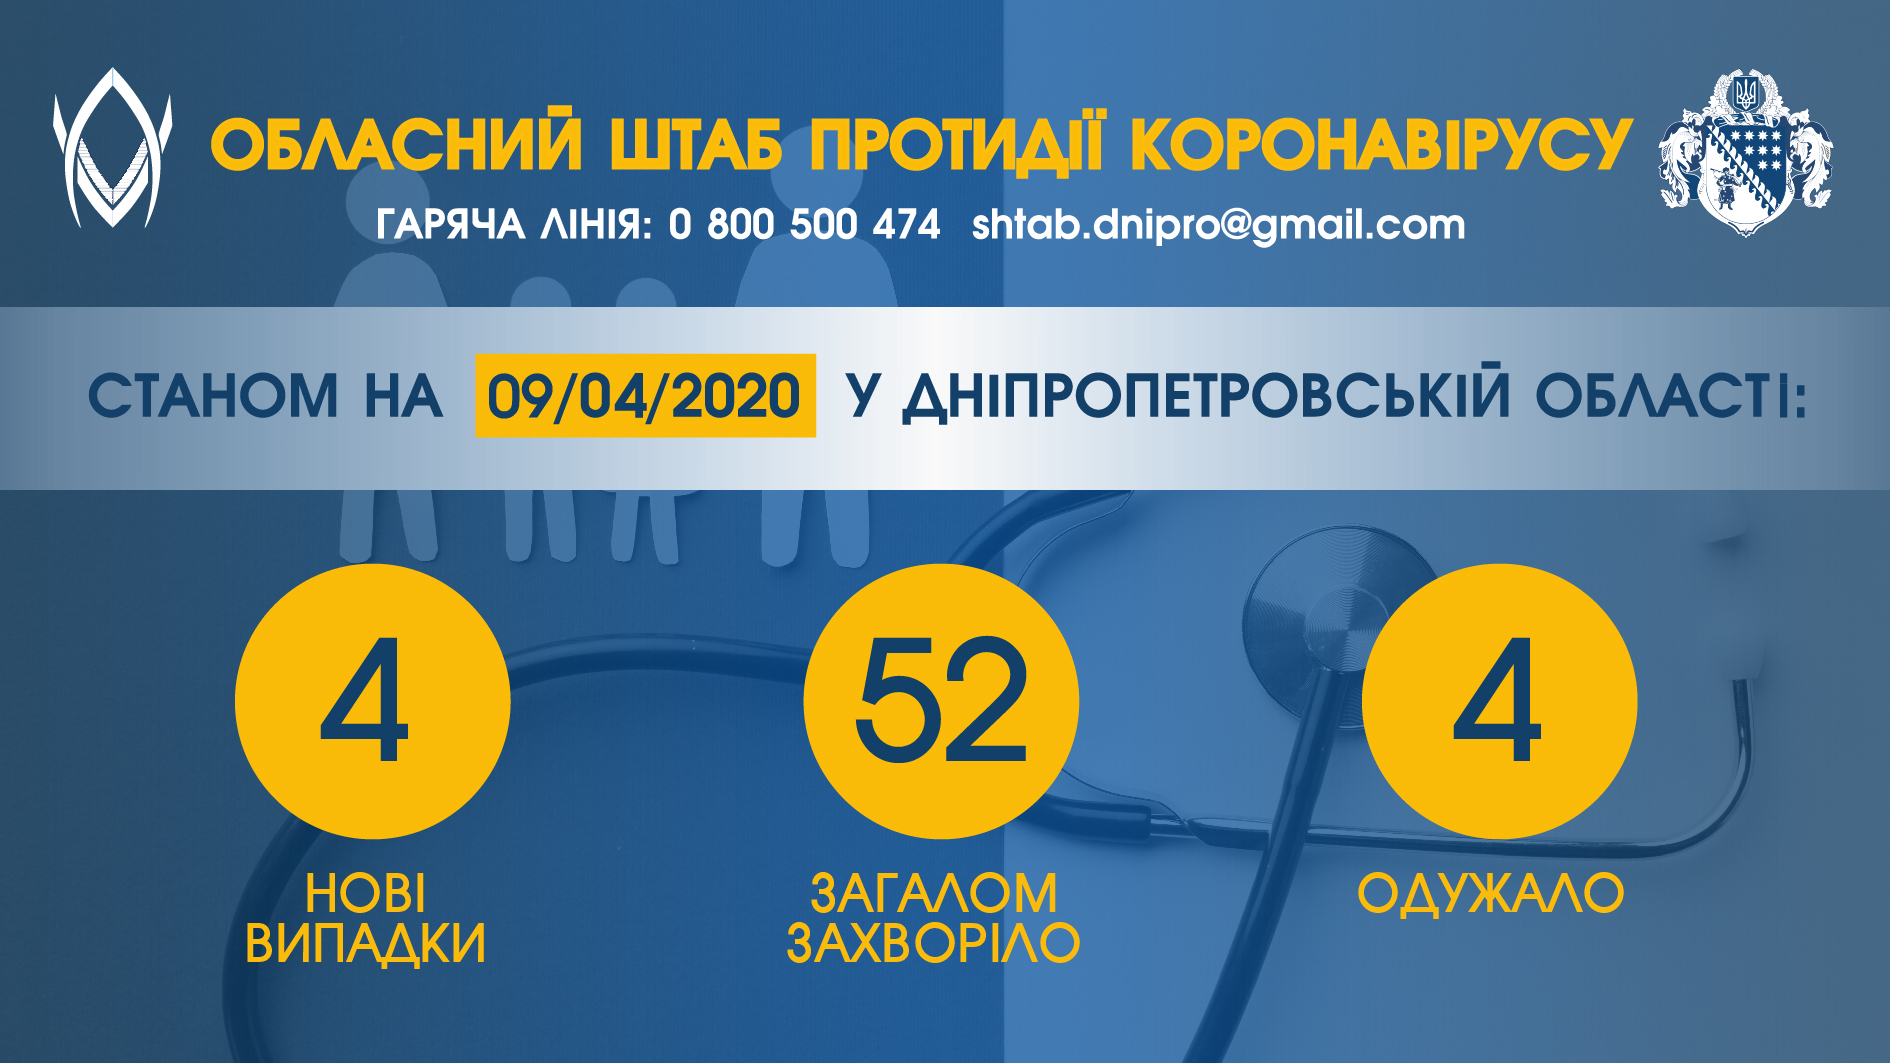 Количество инфицированных COVID-19 жителей Днепропетровской области превысило полсотни